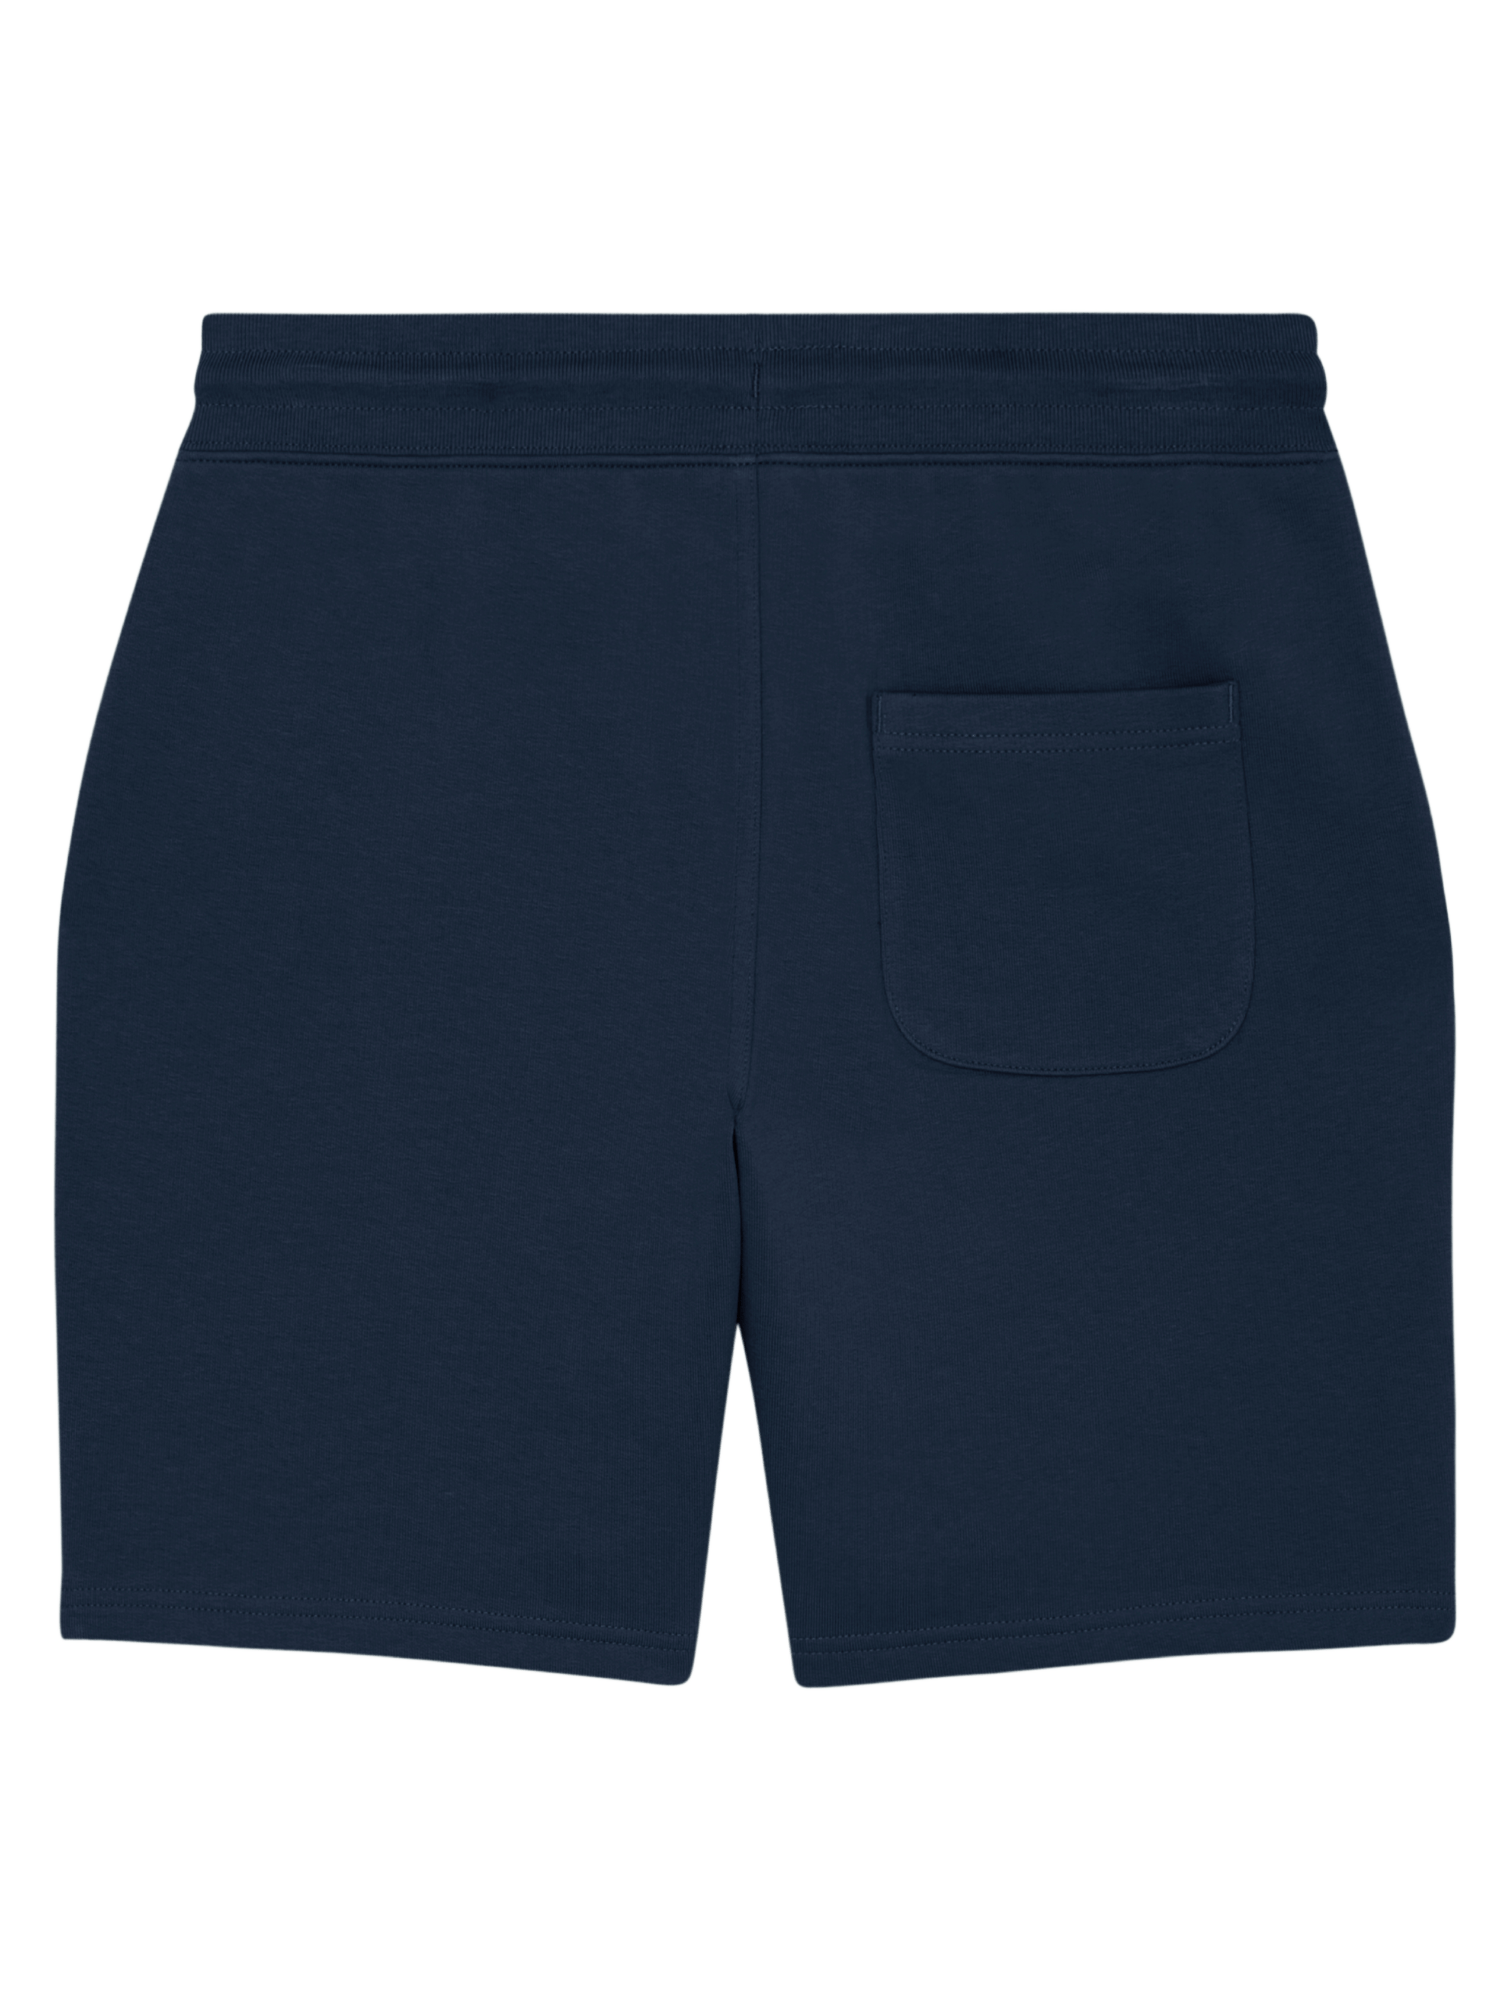 Tropical Paradise Unisex Shorts, French Navy